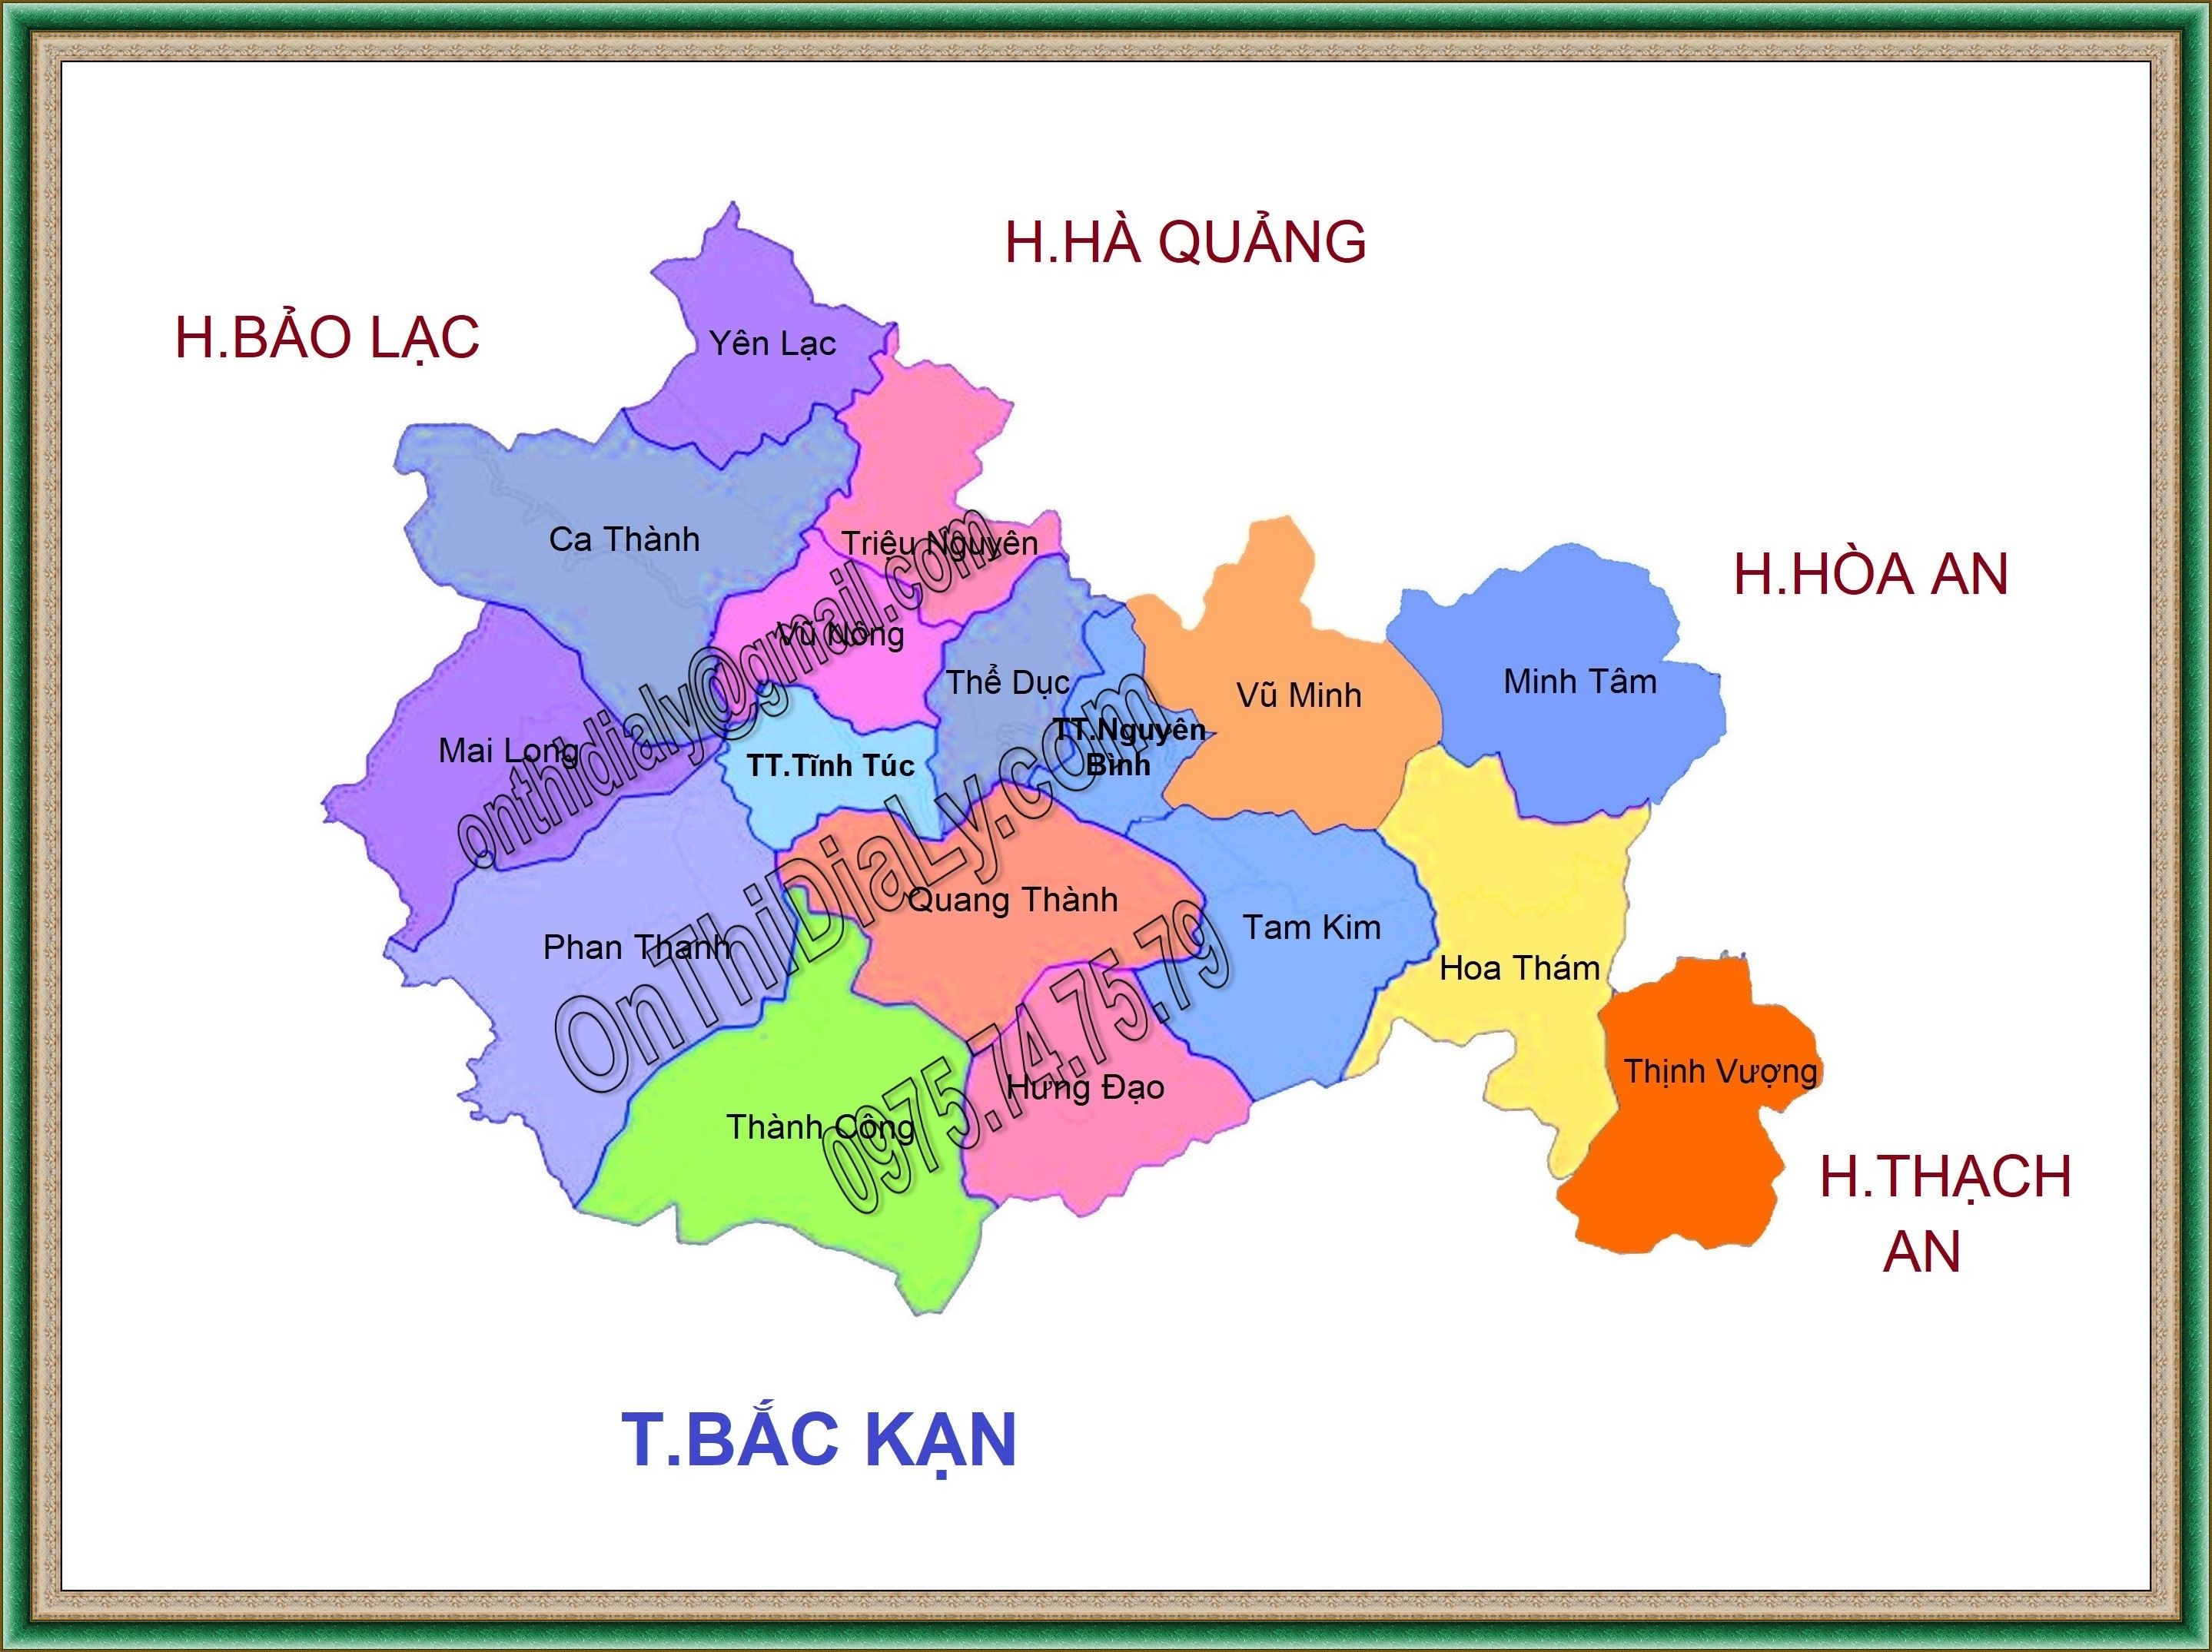 Nguyen Binh - Cao Bang 7